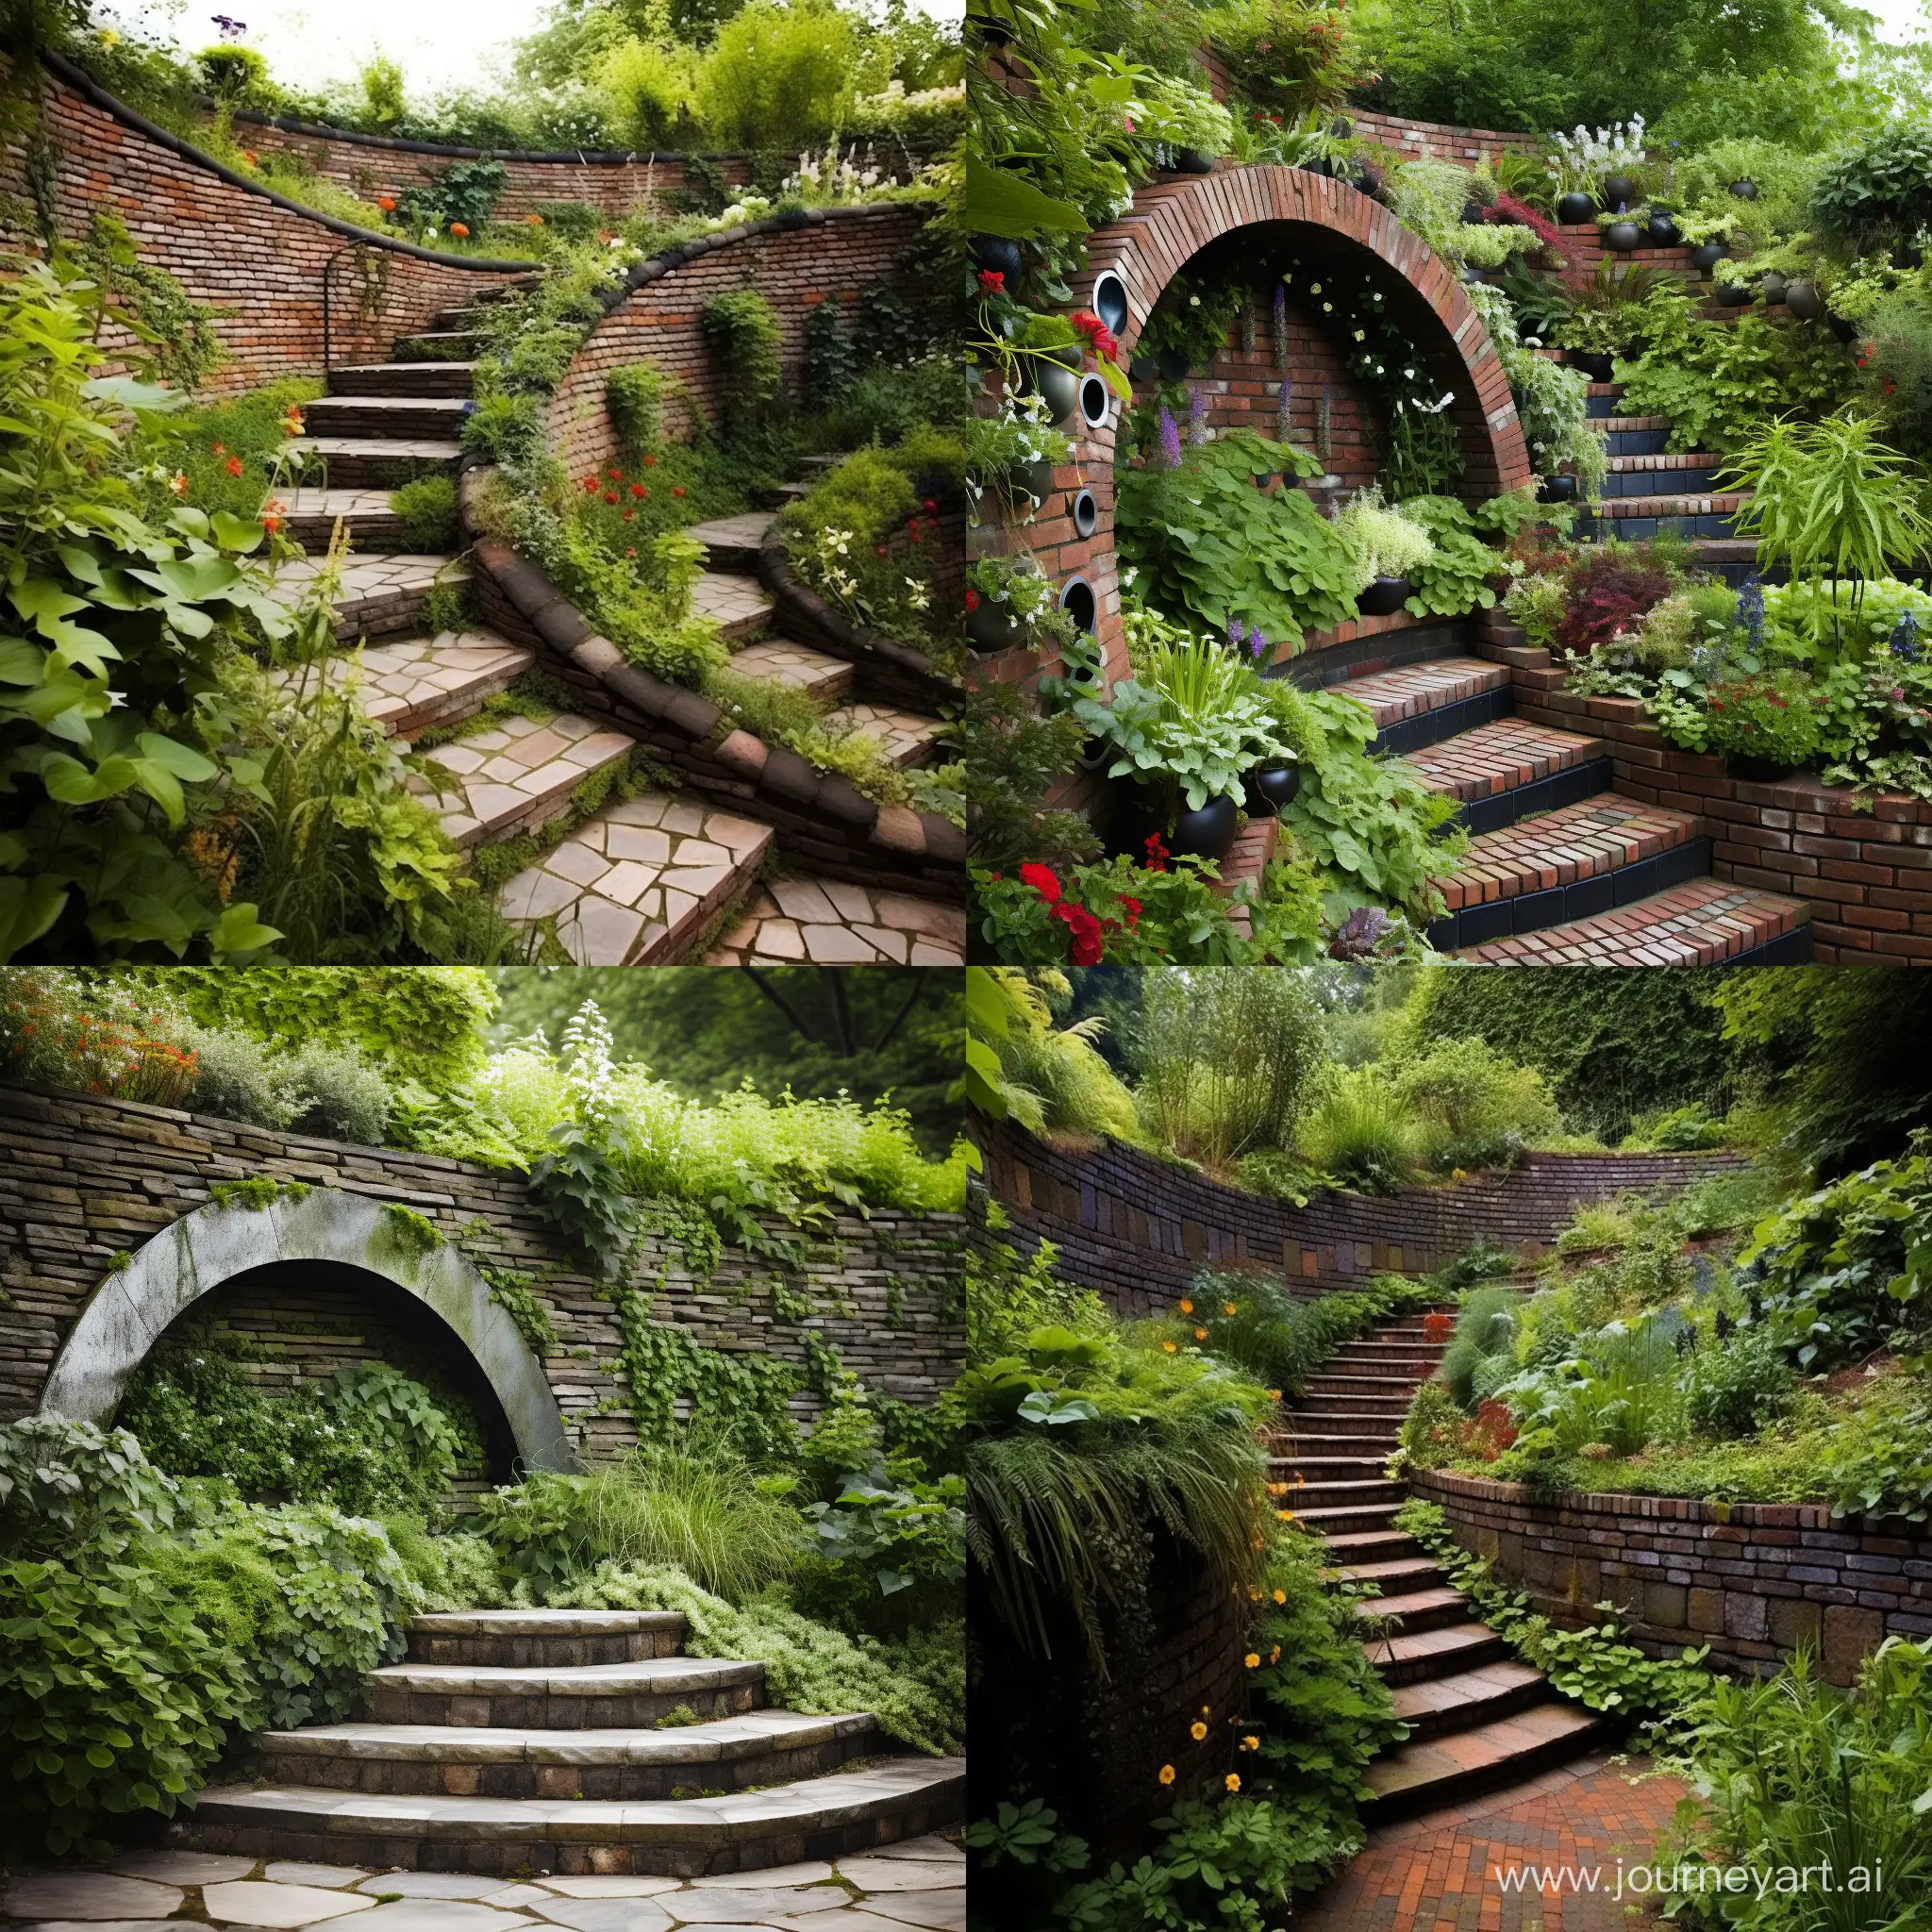 Circular-Staircase-on-Sloped-Garden-Wall